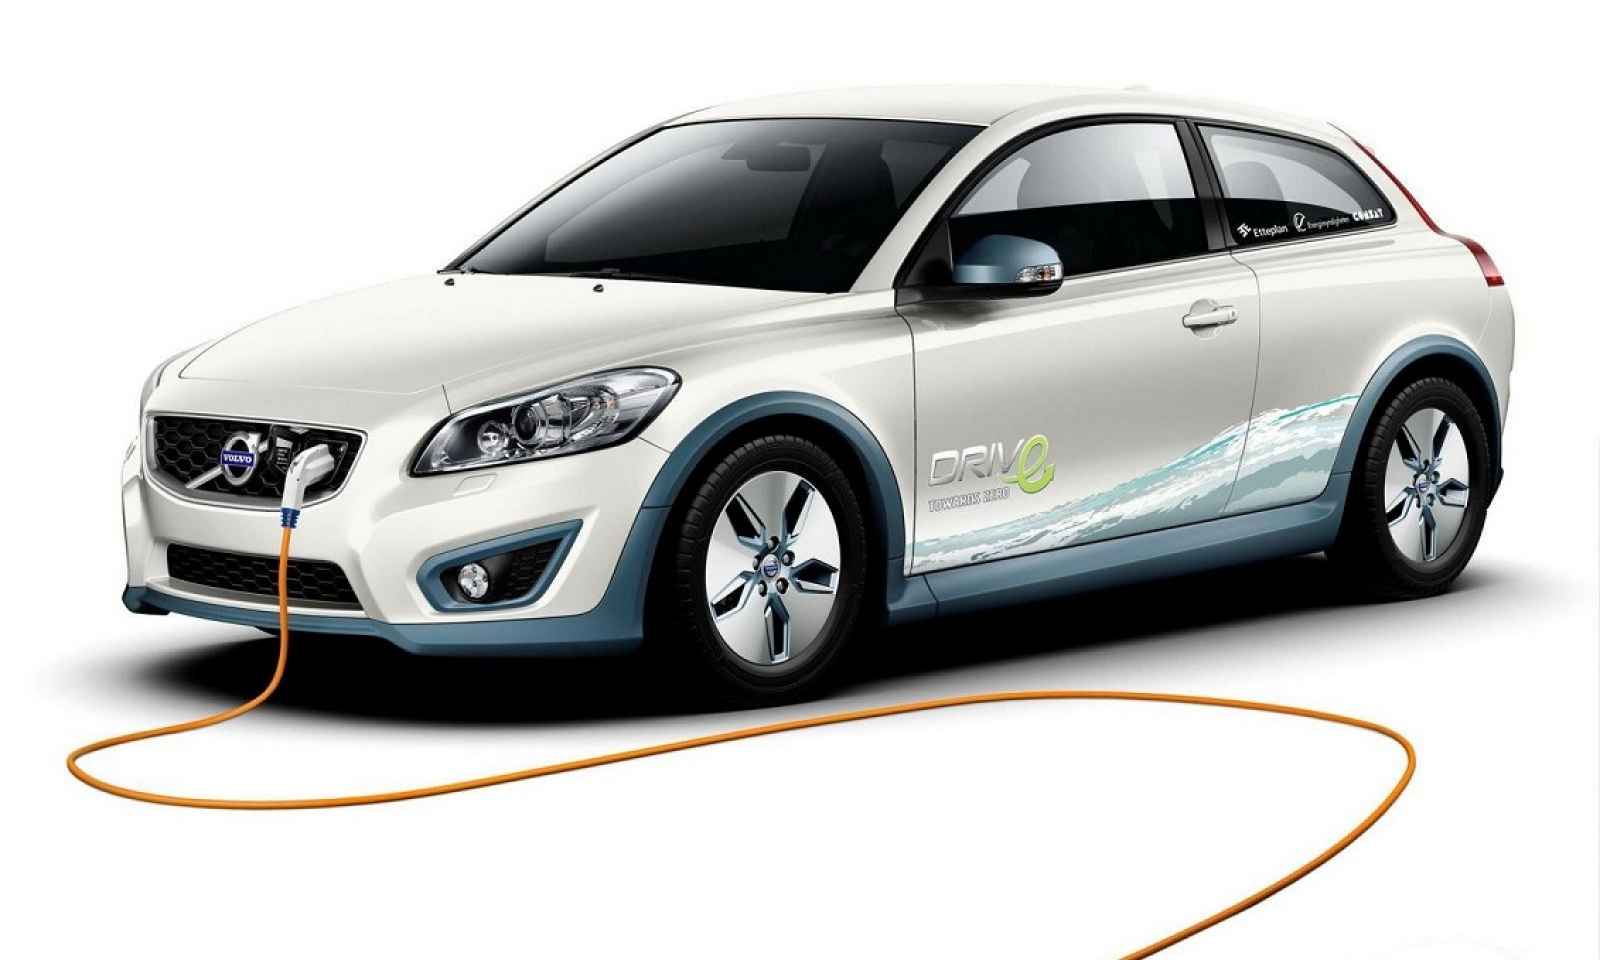 Volvo elektrikli araçlar arasında liderliğe oynayacak